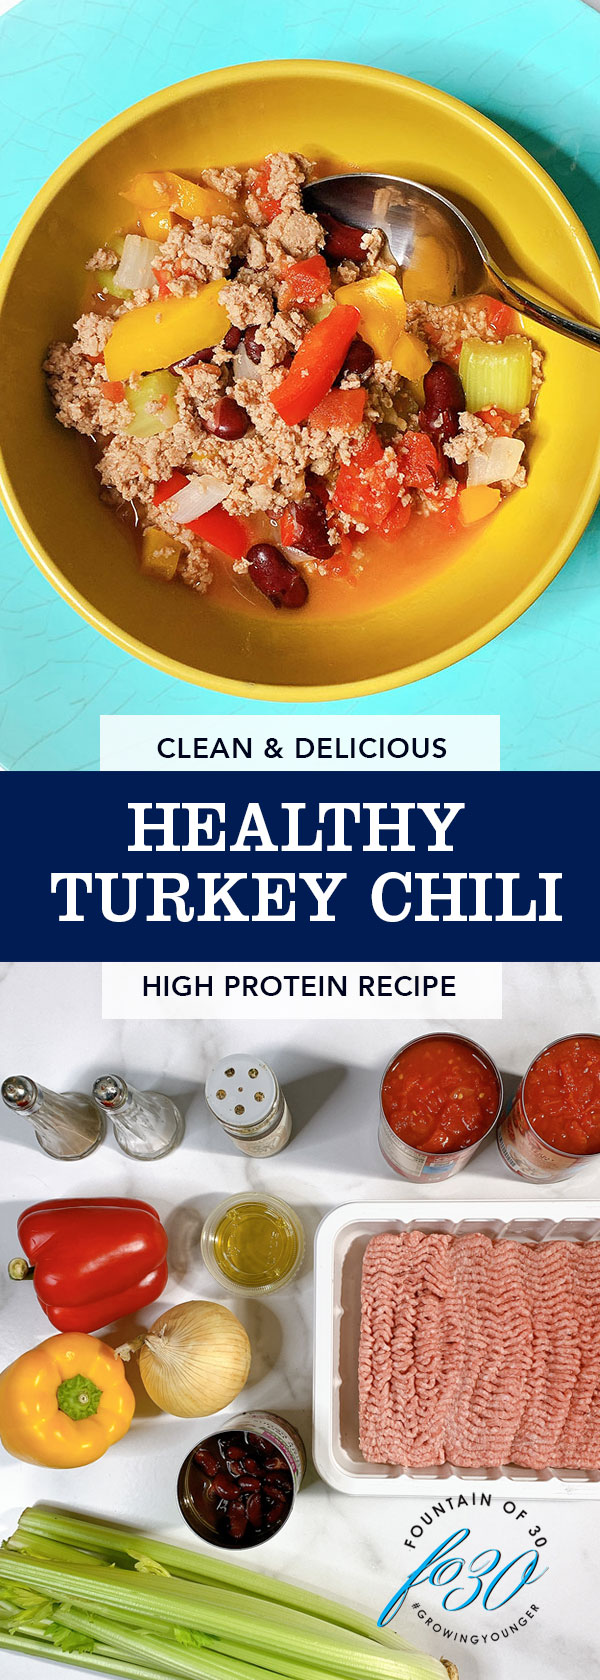 healthy turkey chili fountainof30